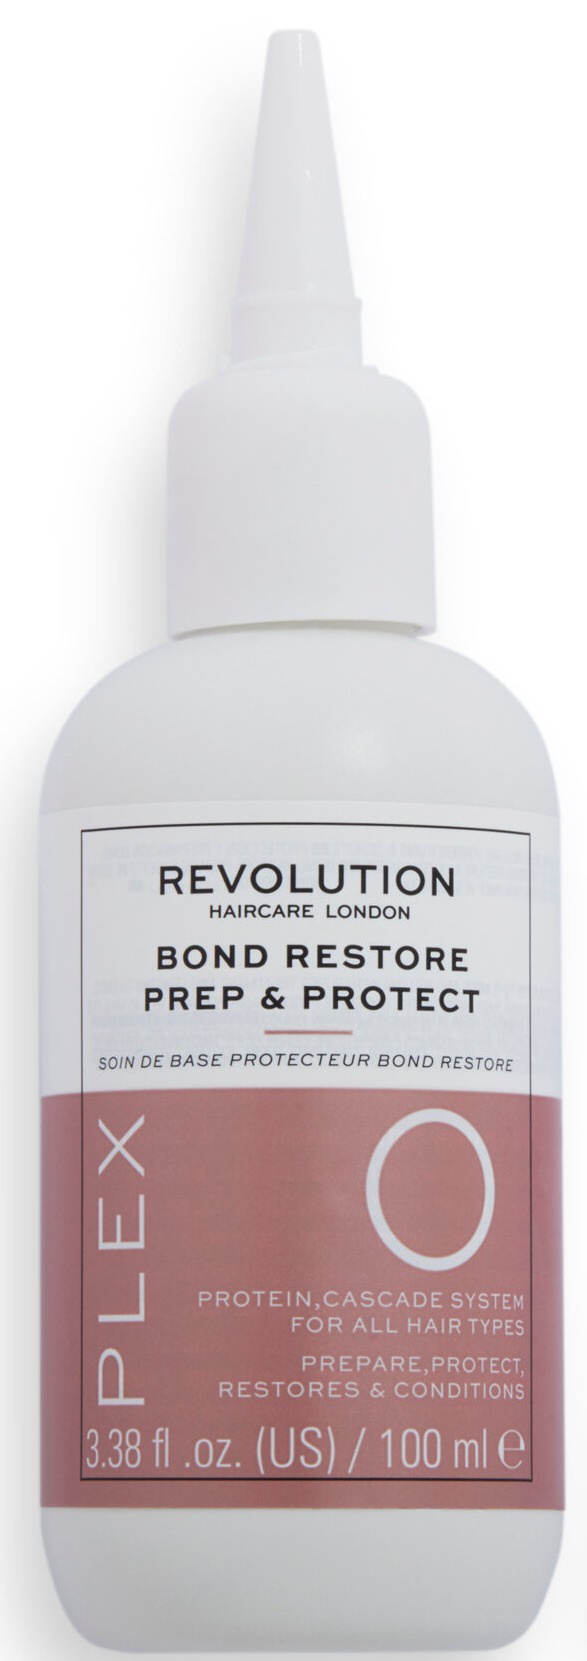 Revolution Haircare Plex 0 Bond Restore Prep & Protect